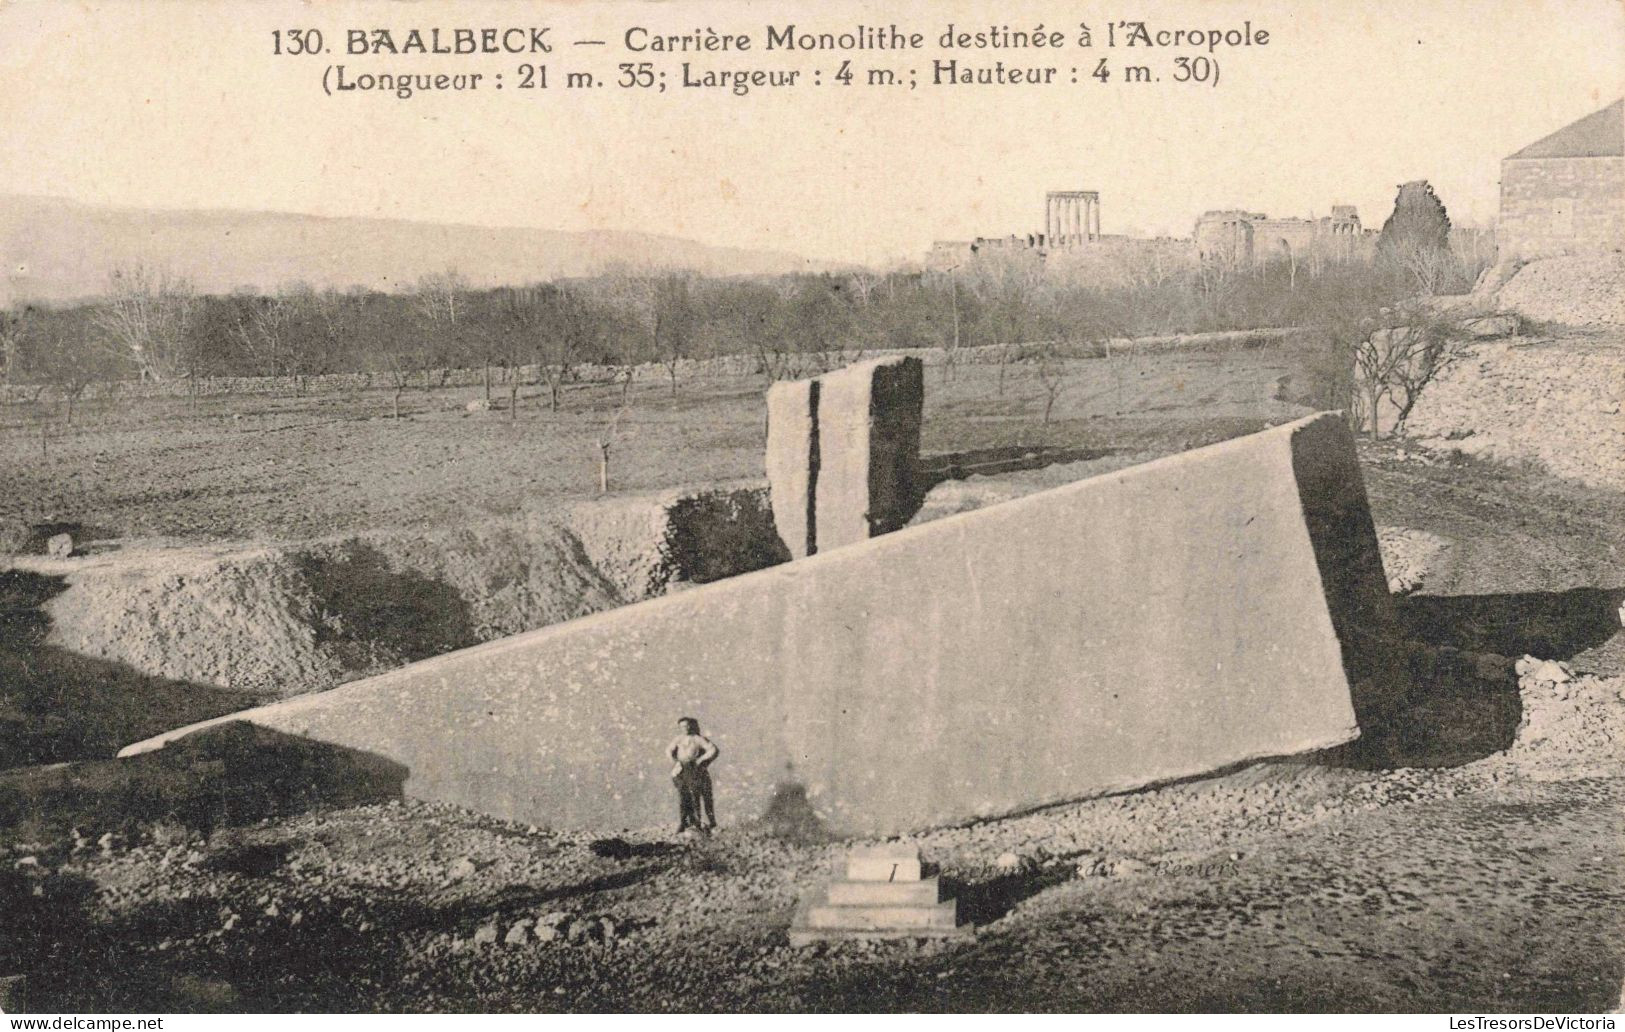 LIBAN - Baalbeck - Carrière Monolithe Destinée à L'Acropole - Carte Postale Ancienne - Libanon